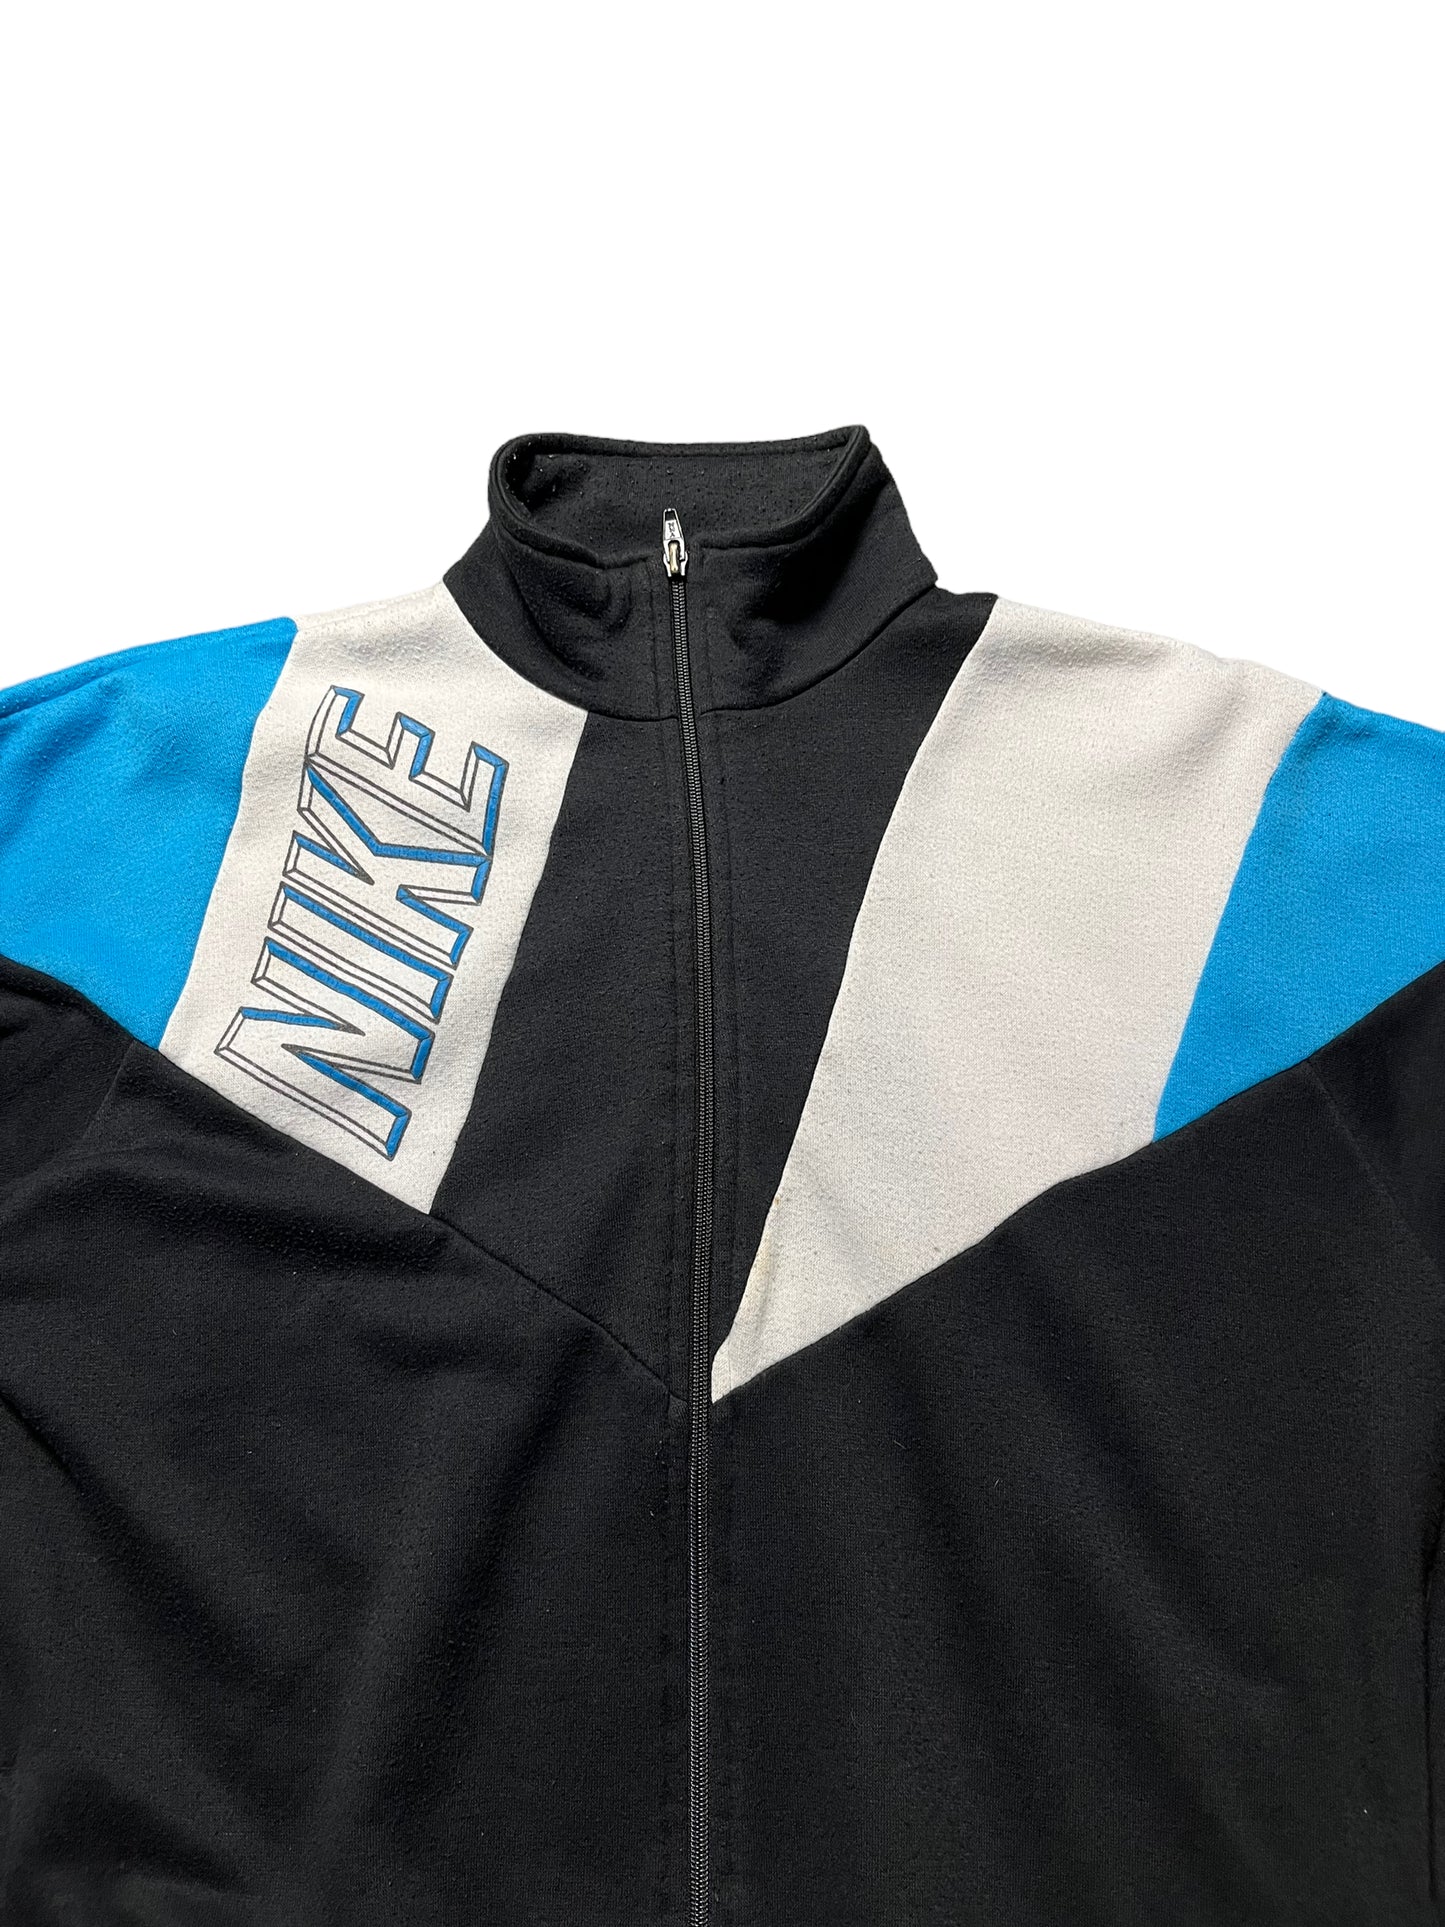 (S) Vintage Nike Full Zip Jacket